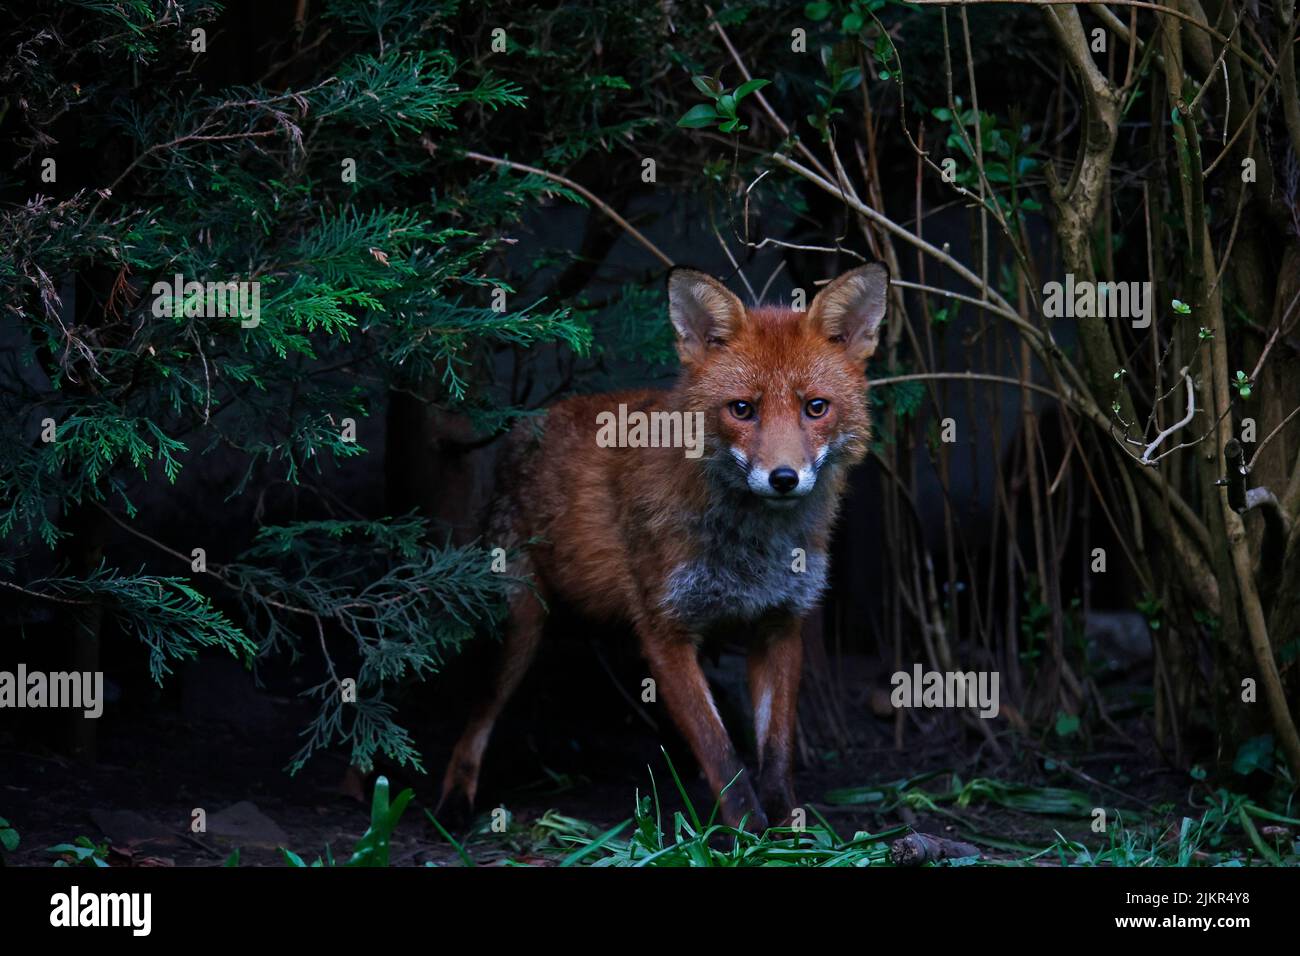 A family of urban foxes explore the garden Stock Photo